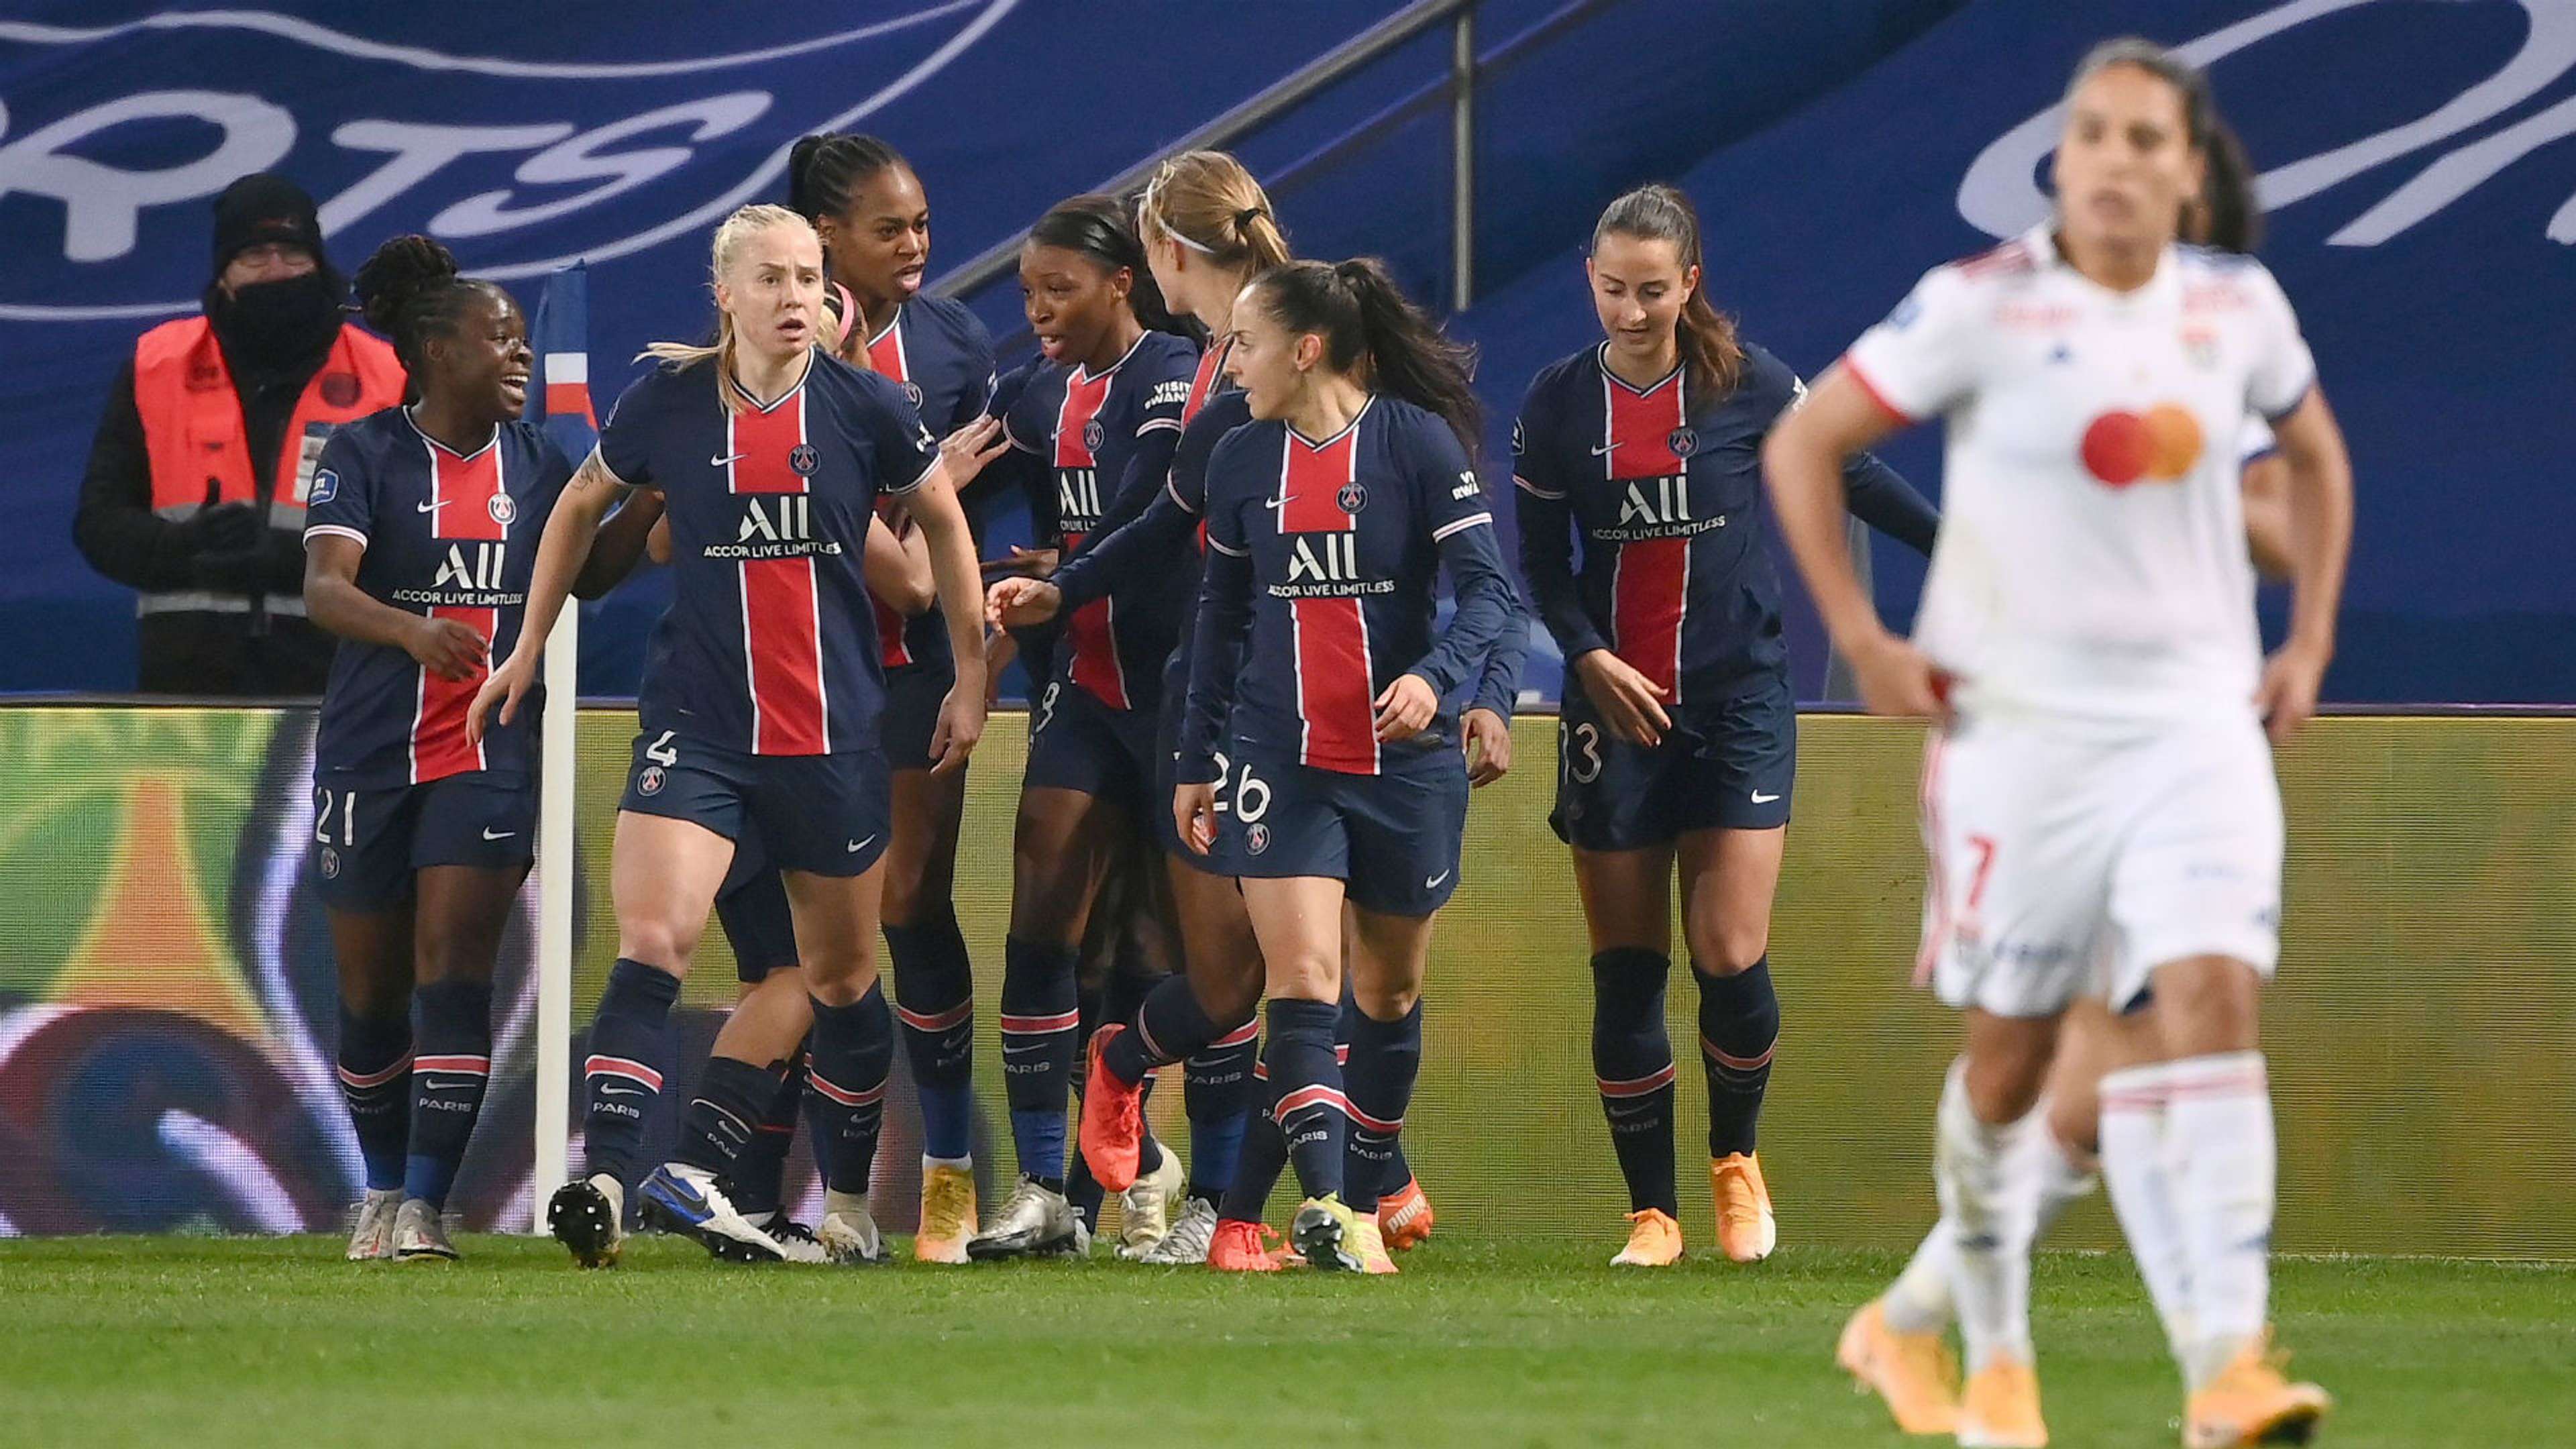 PSG Lyon Ligue 1 Women 20112020